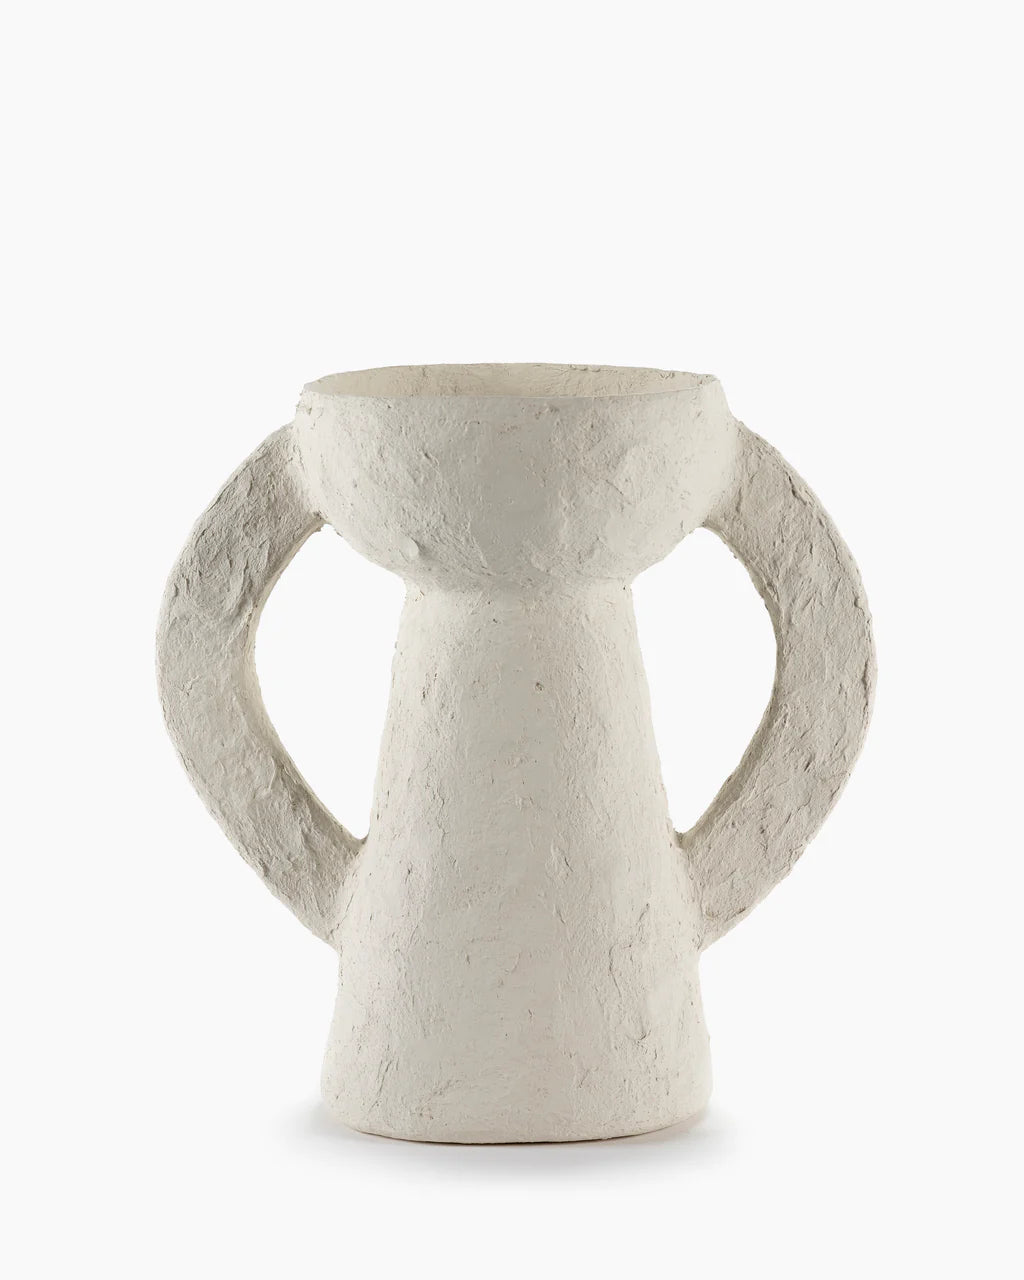 Vase, Large White Earth